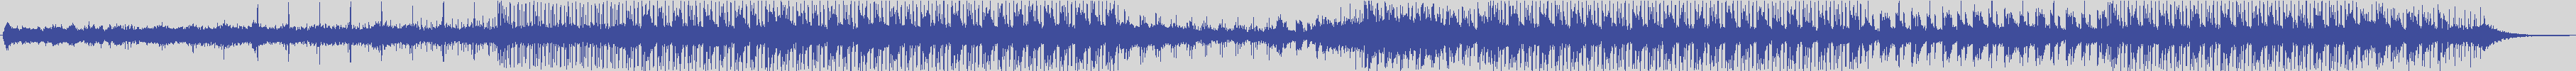 noclouds_chillout [NOC141] Unearthly - Positive Vibration [Original Mix] audio wave form